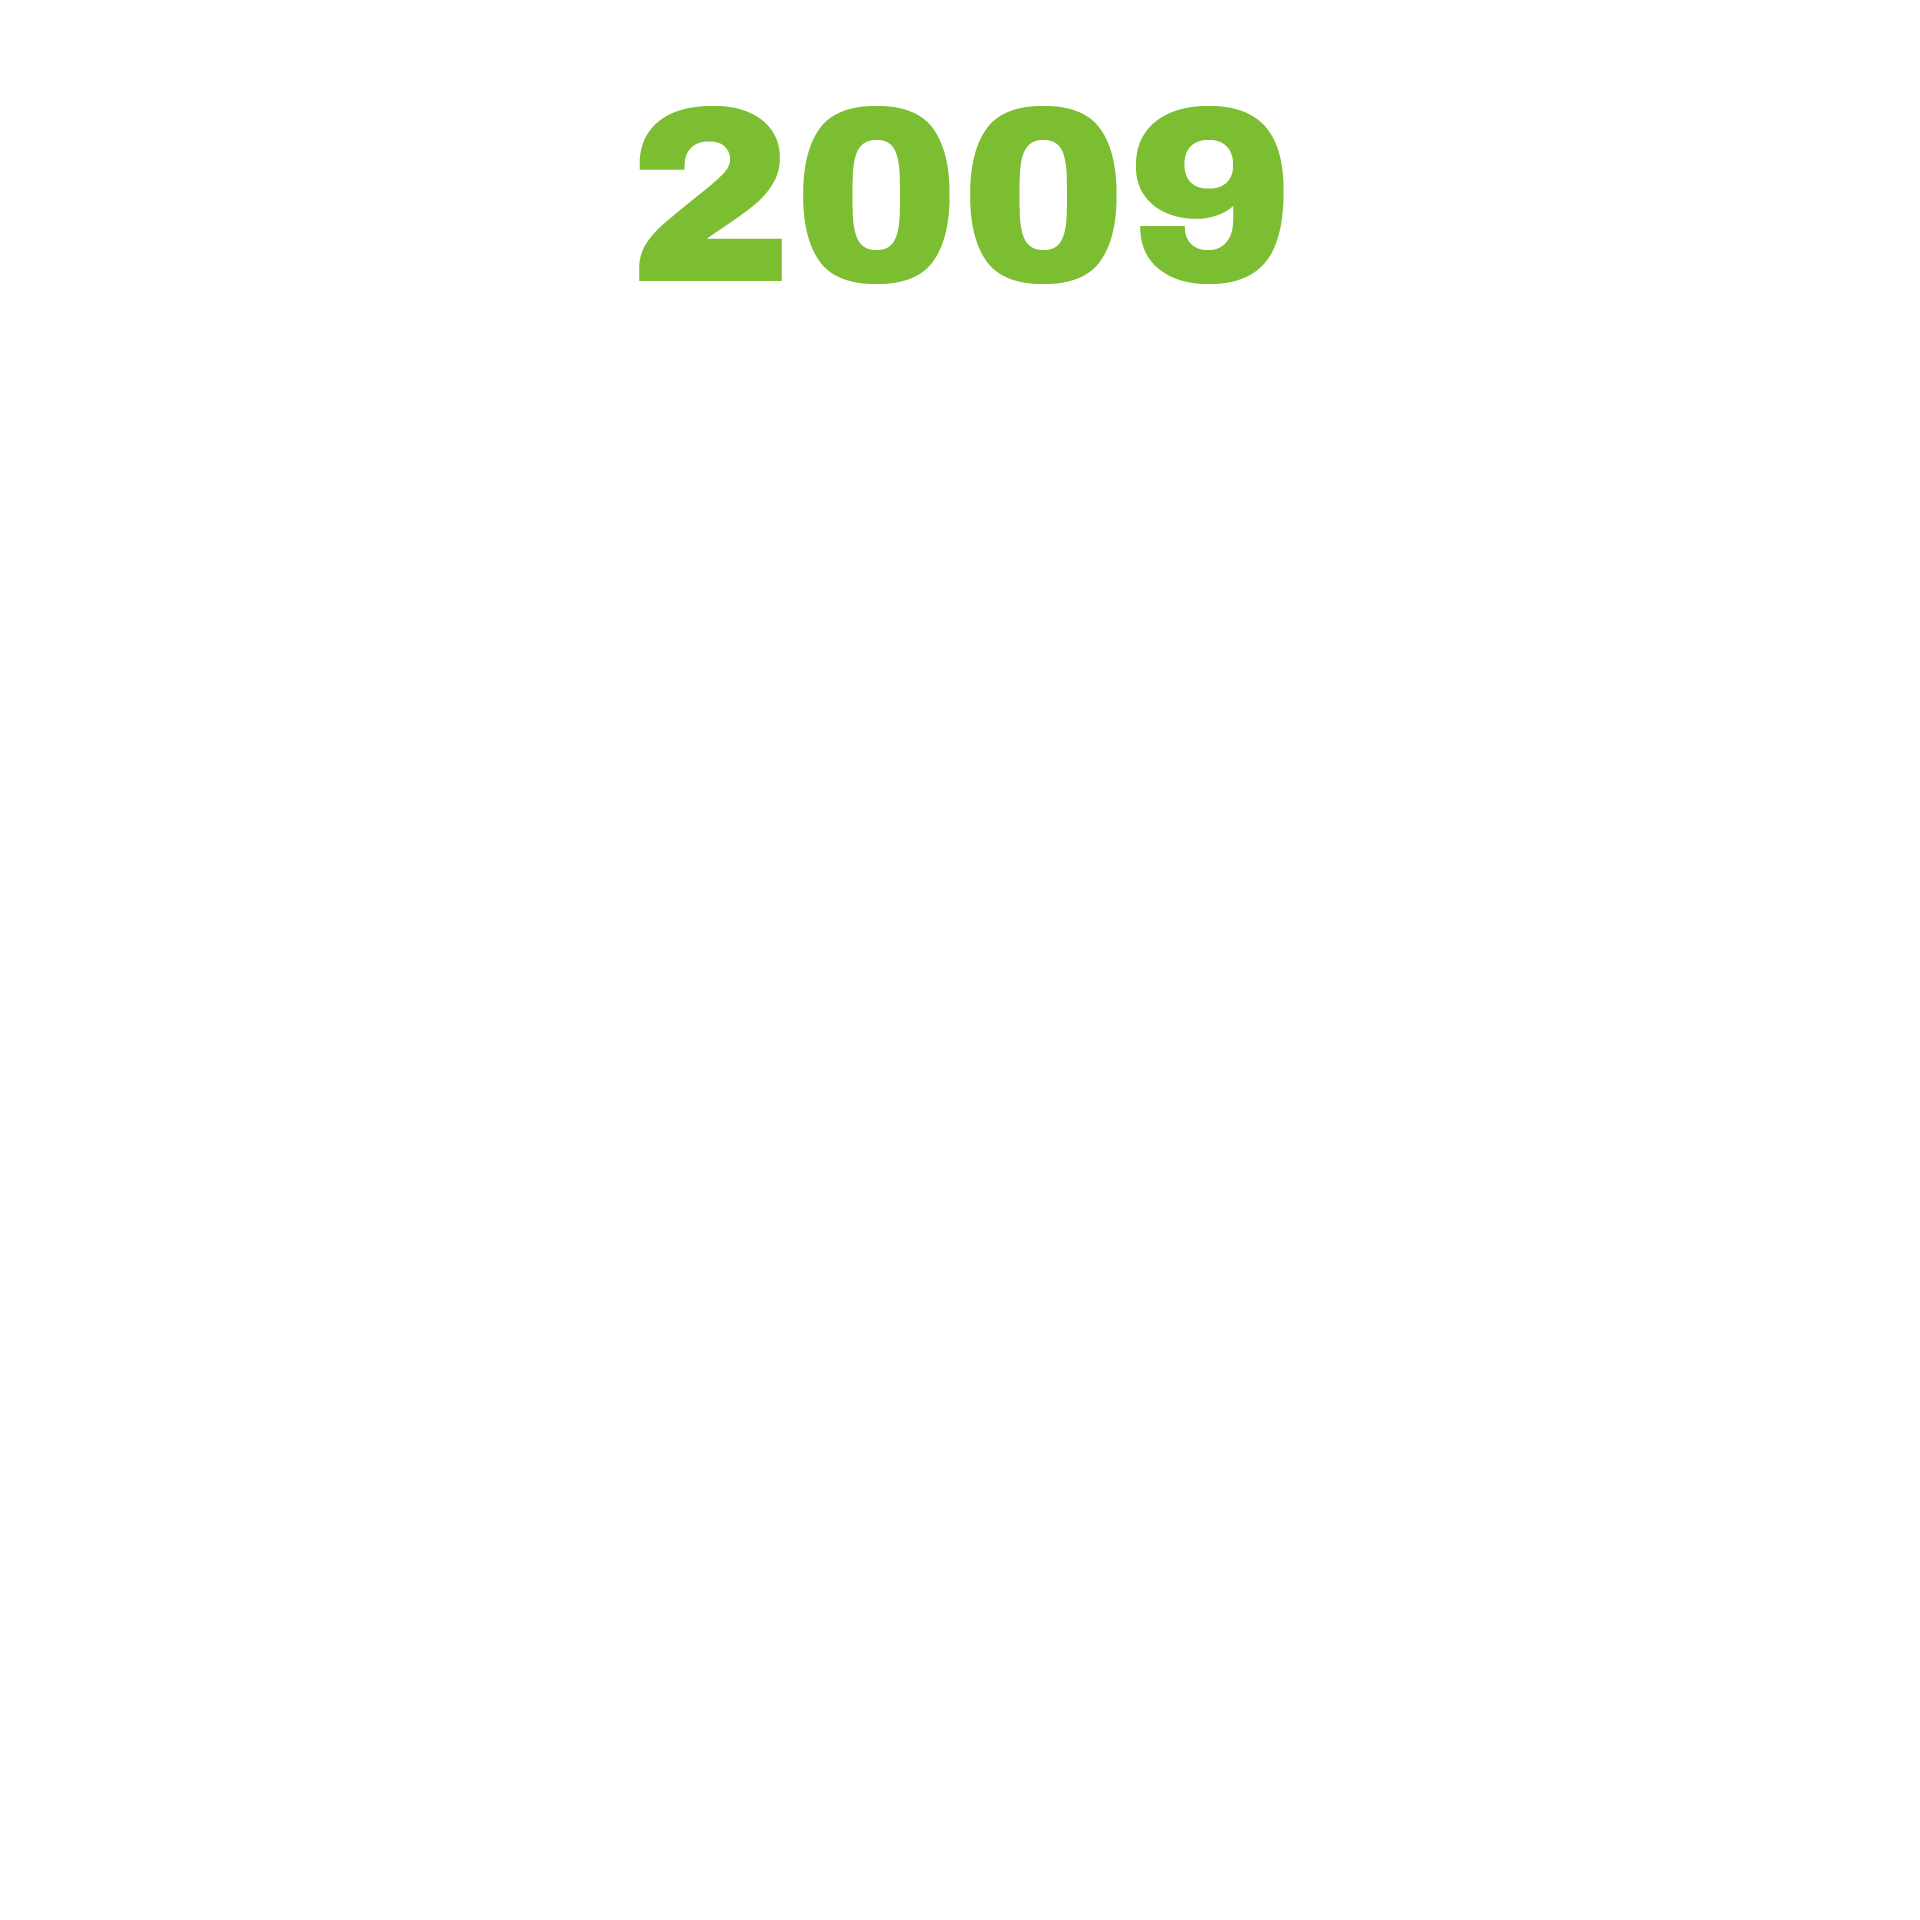 Timeline for Website_2009.png